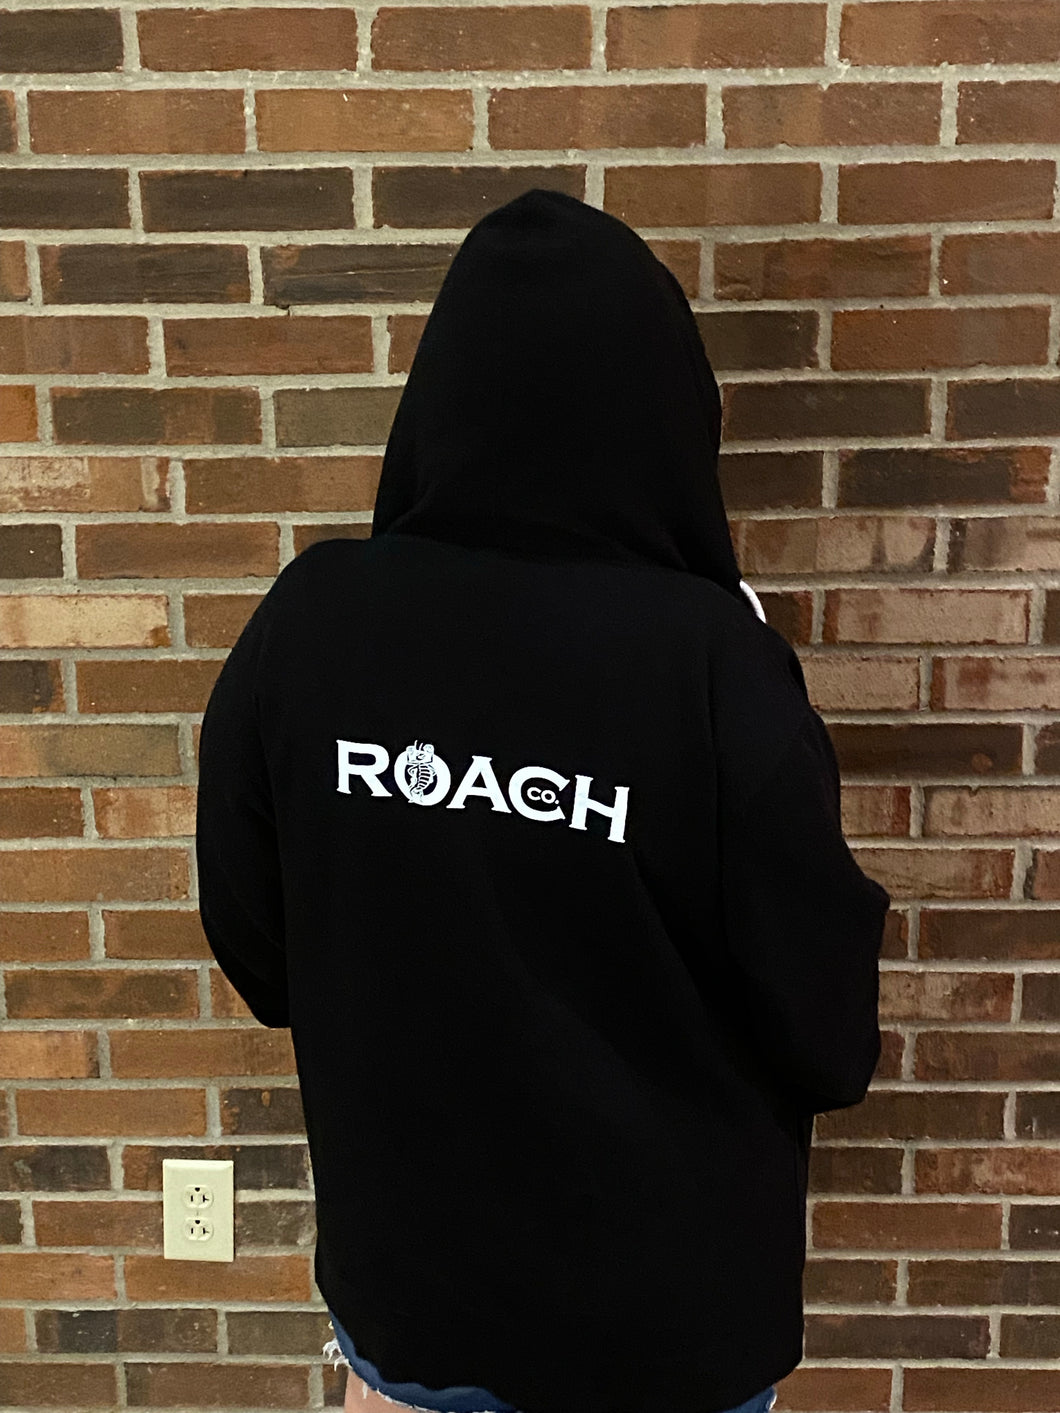 Roach hoodies